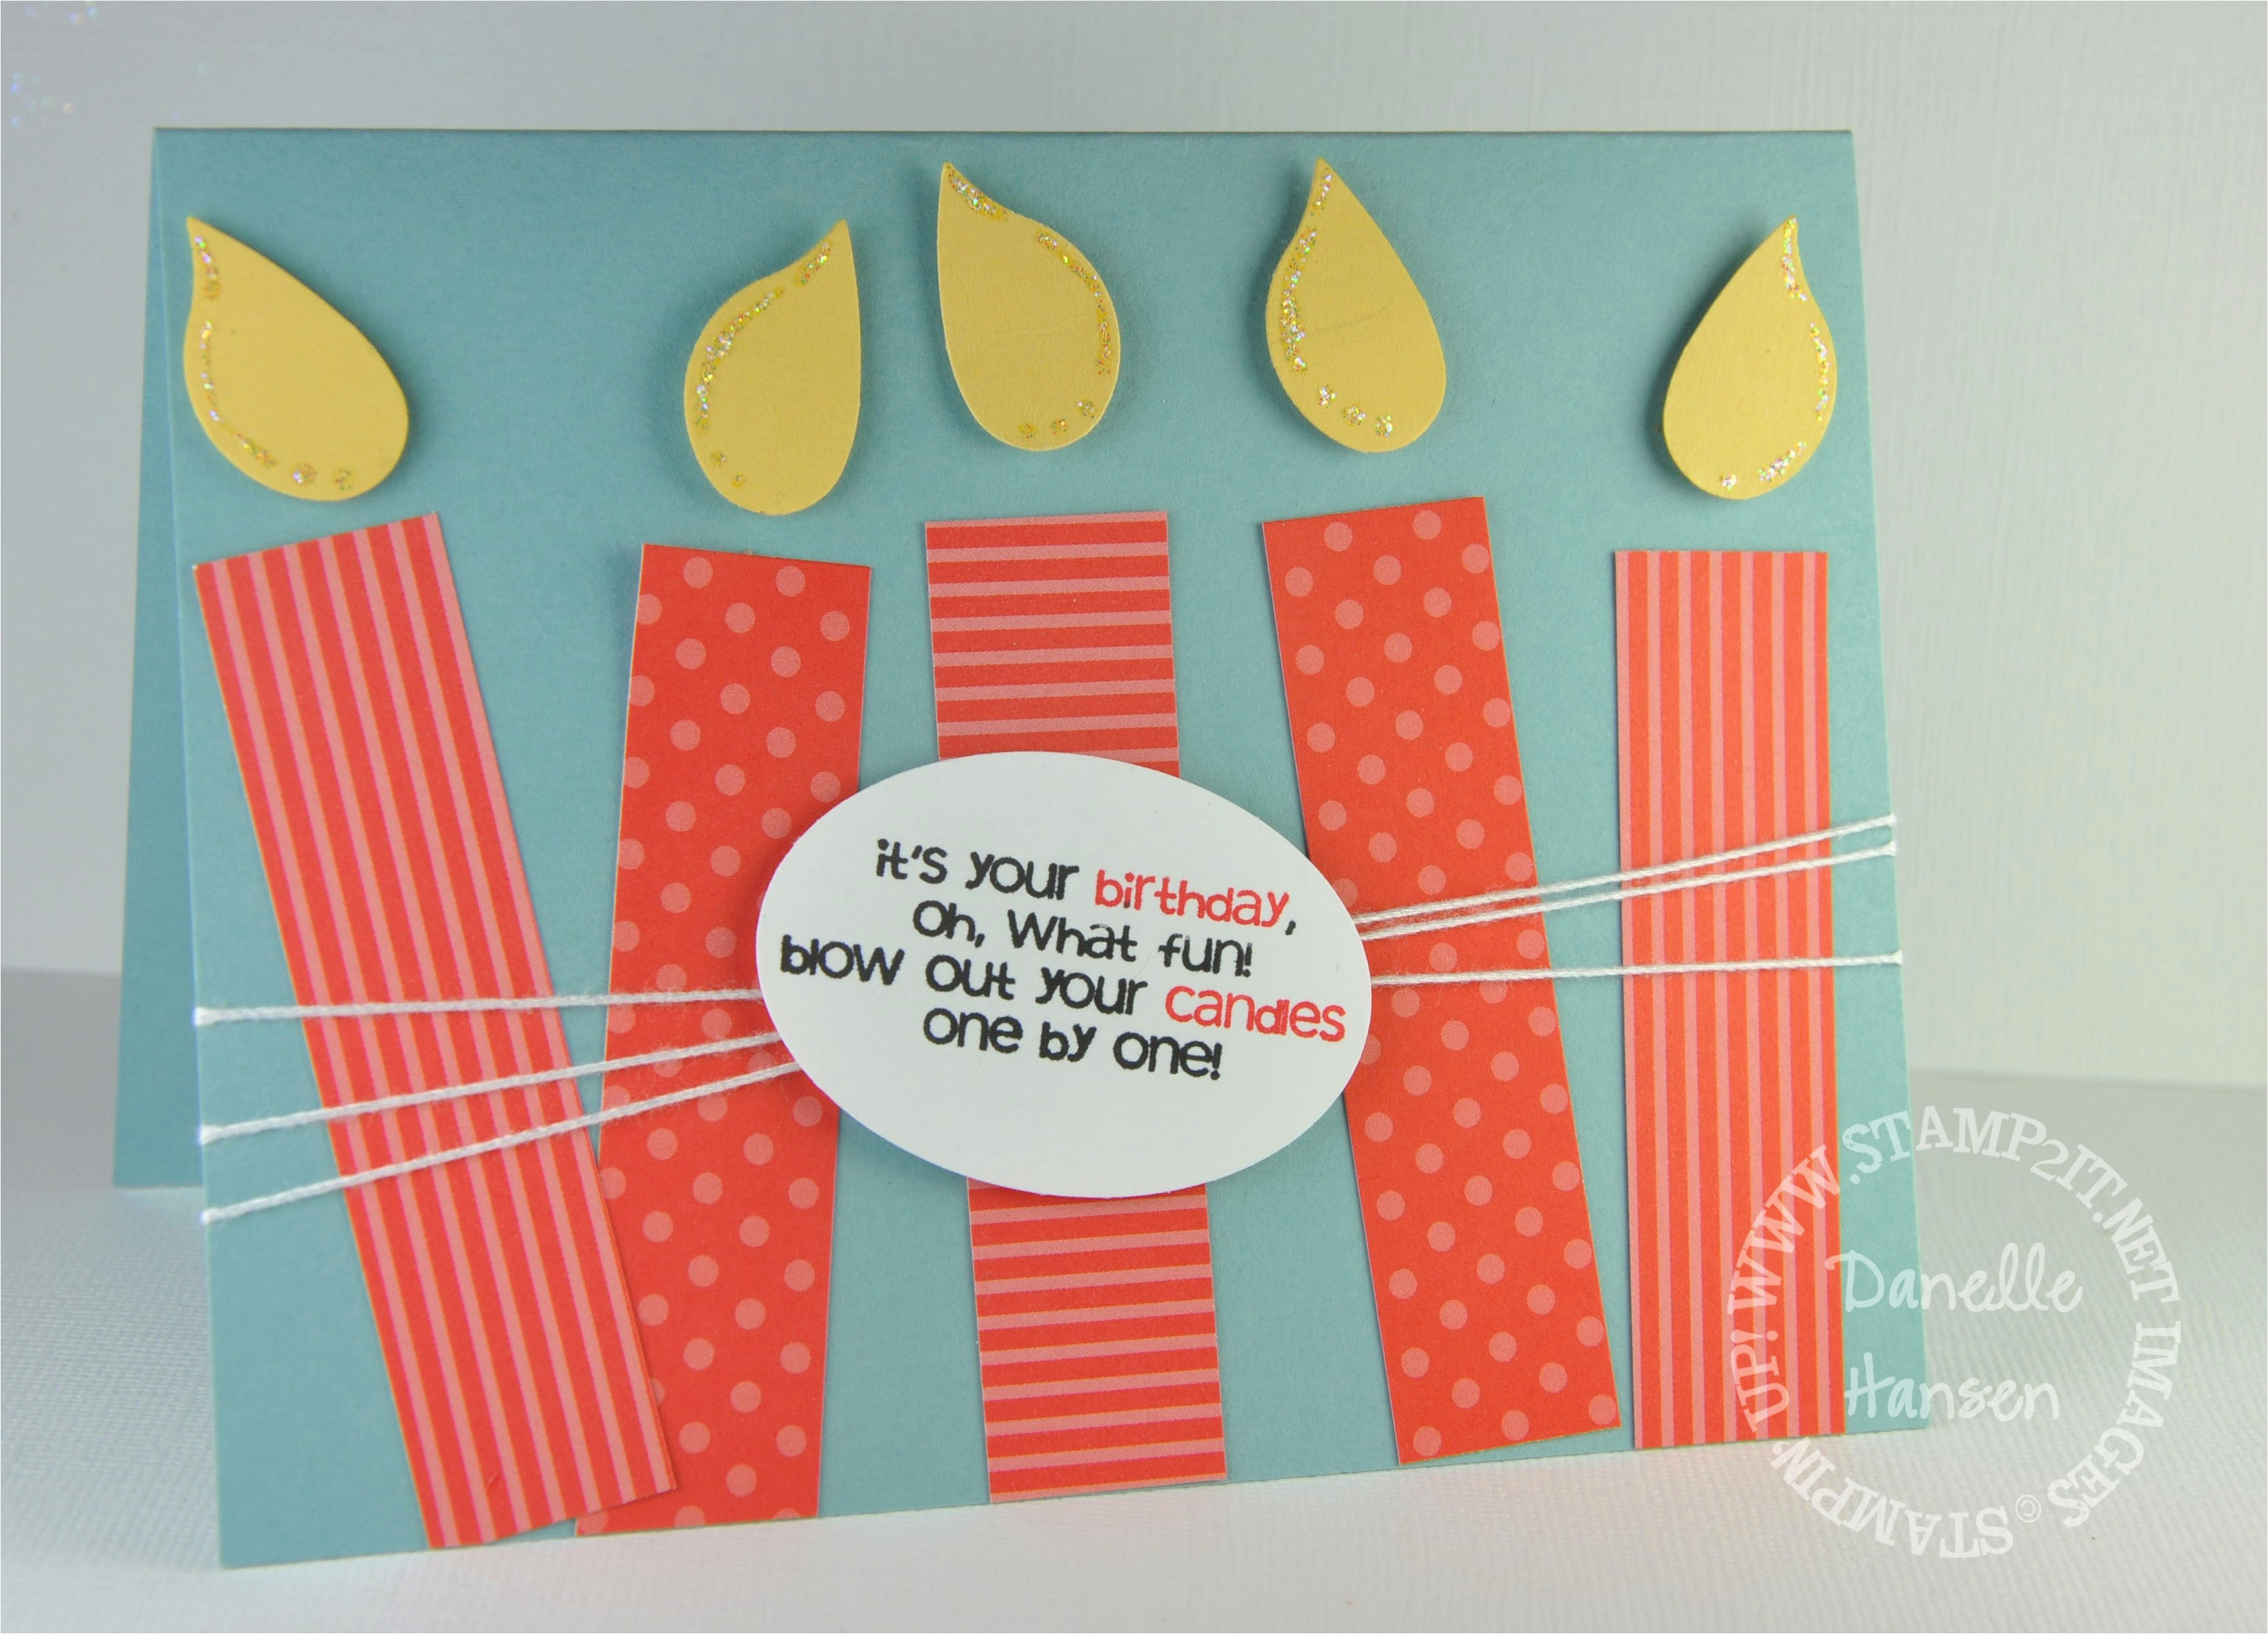 Creative Ideas For Birthday Cards Diy Birthday Cards For Husband Creative Handmade Birthday Card Ideas